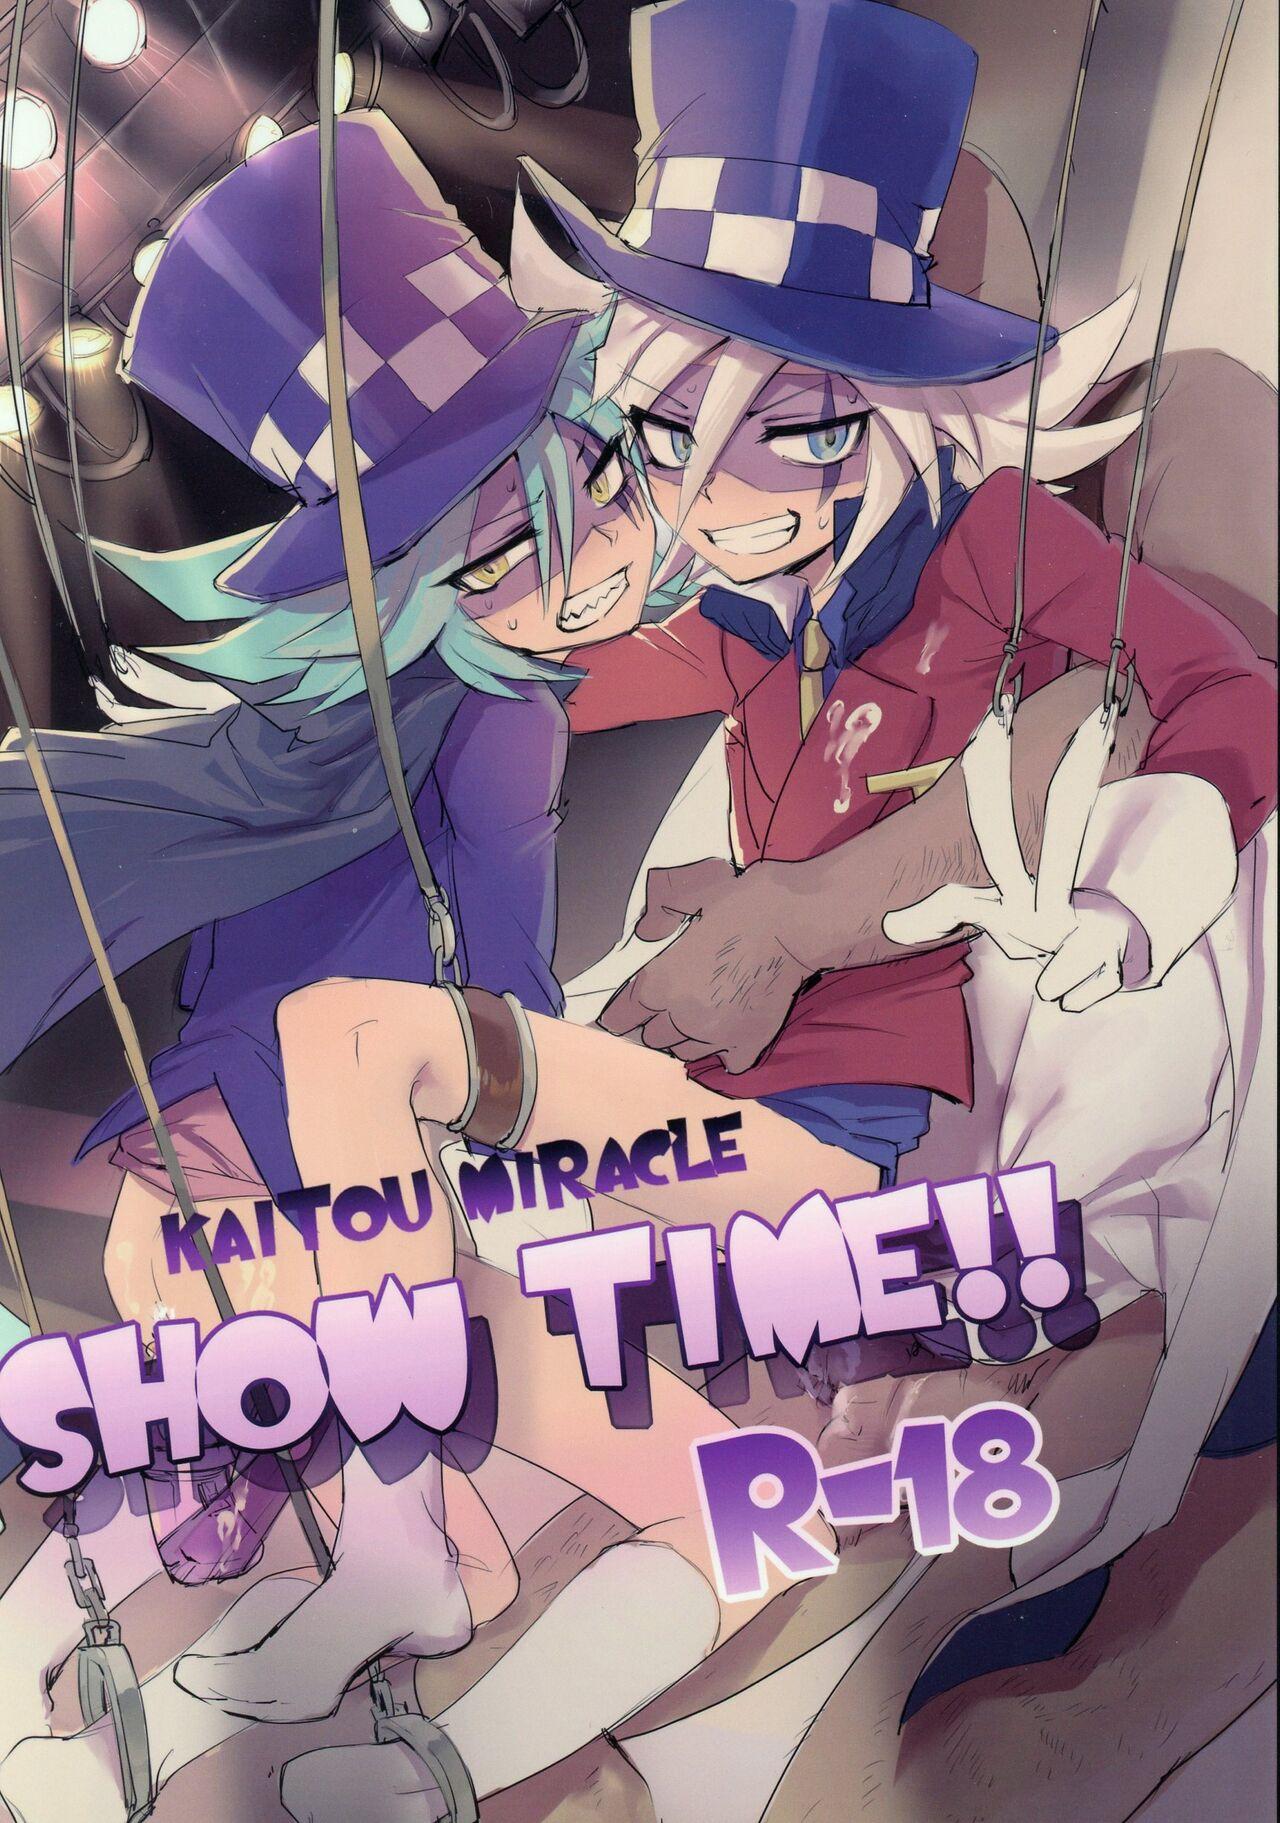 Smooth Kaitou Miracle Showtime!! - Kaitou joker Para - Page 1